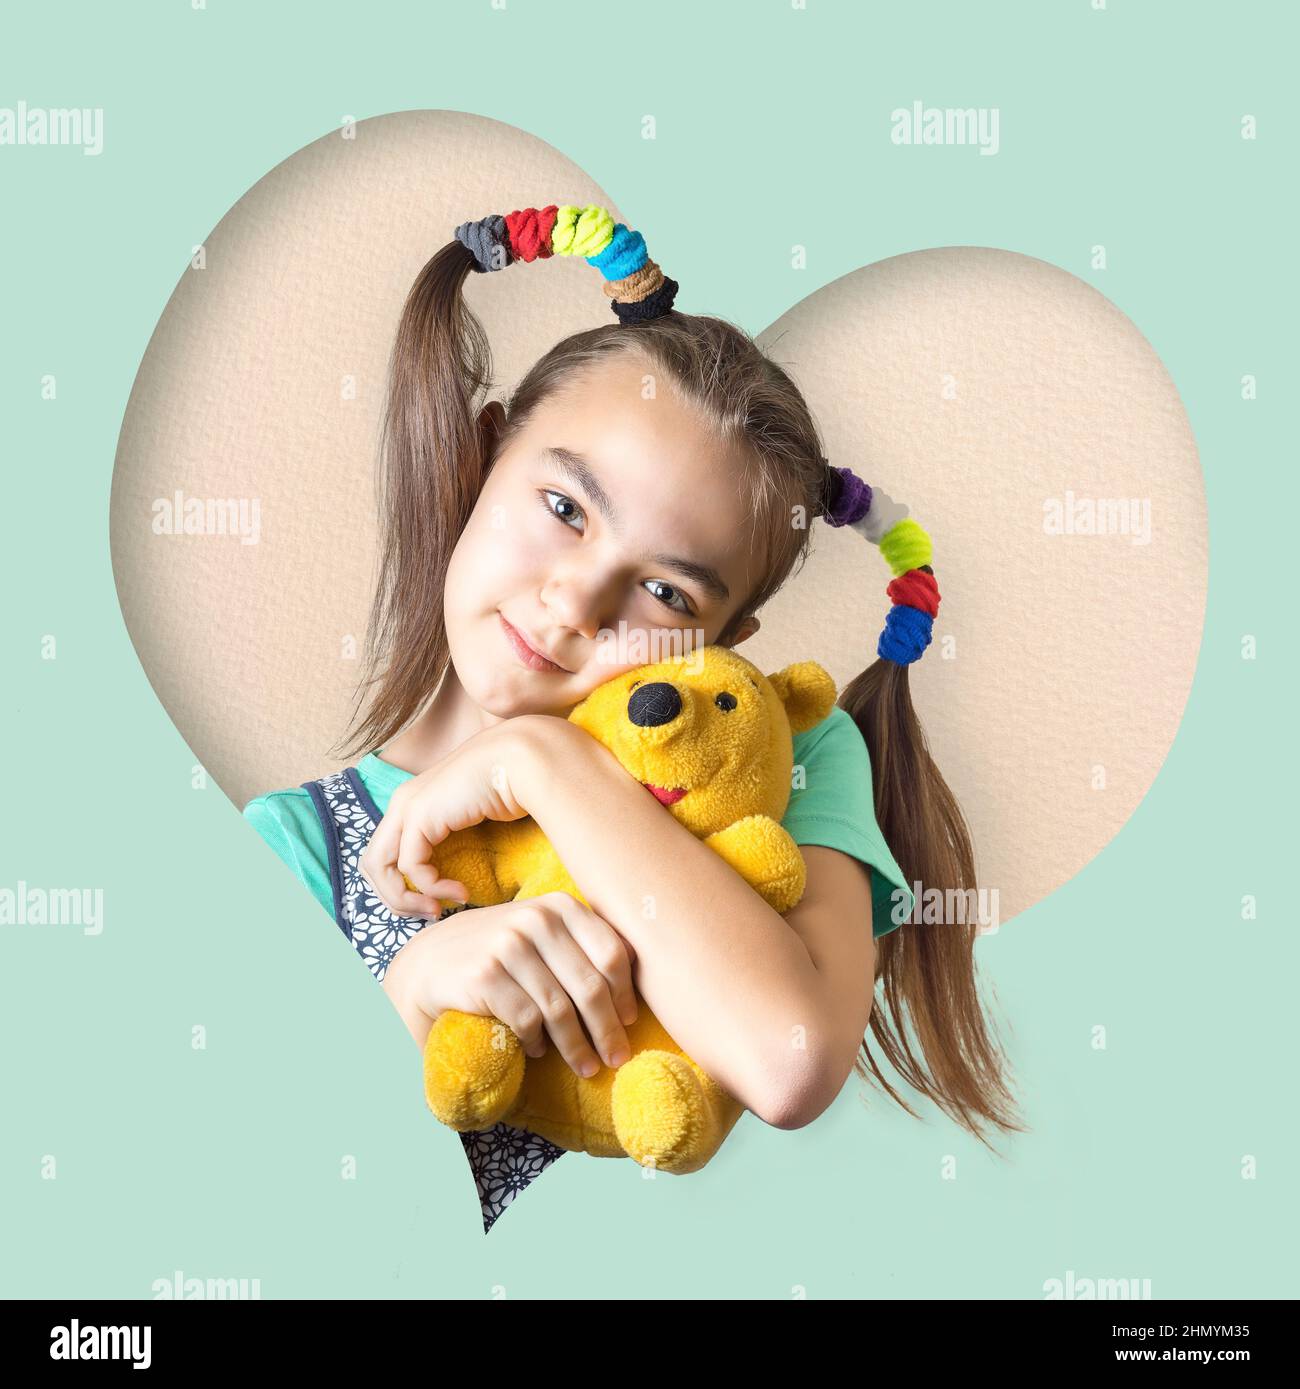 Valentinskarte mit Herzrahmen und 11 Jahre altem Mädchen mit winnie Pooh Spielzeug. Stockfoto